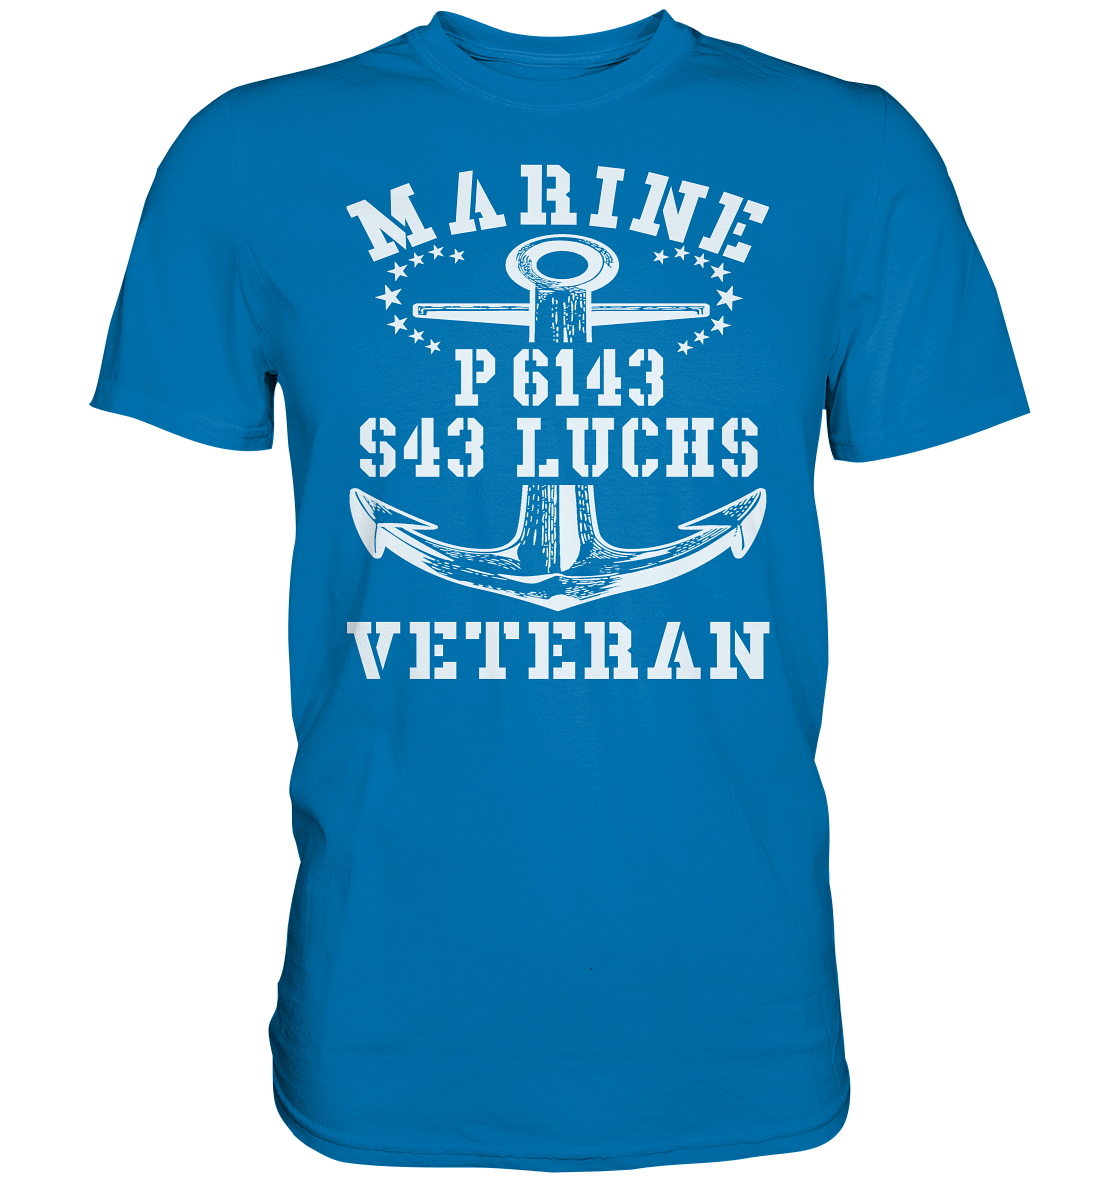 P6143 S43 LUCHS Marine Veteran - Premium Shirt